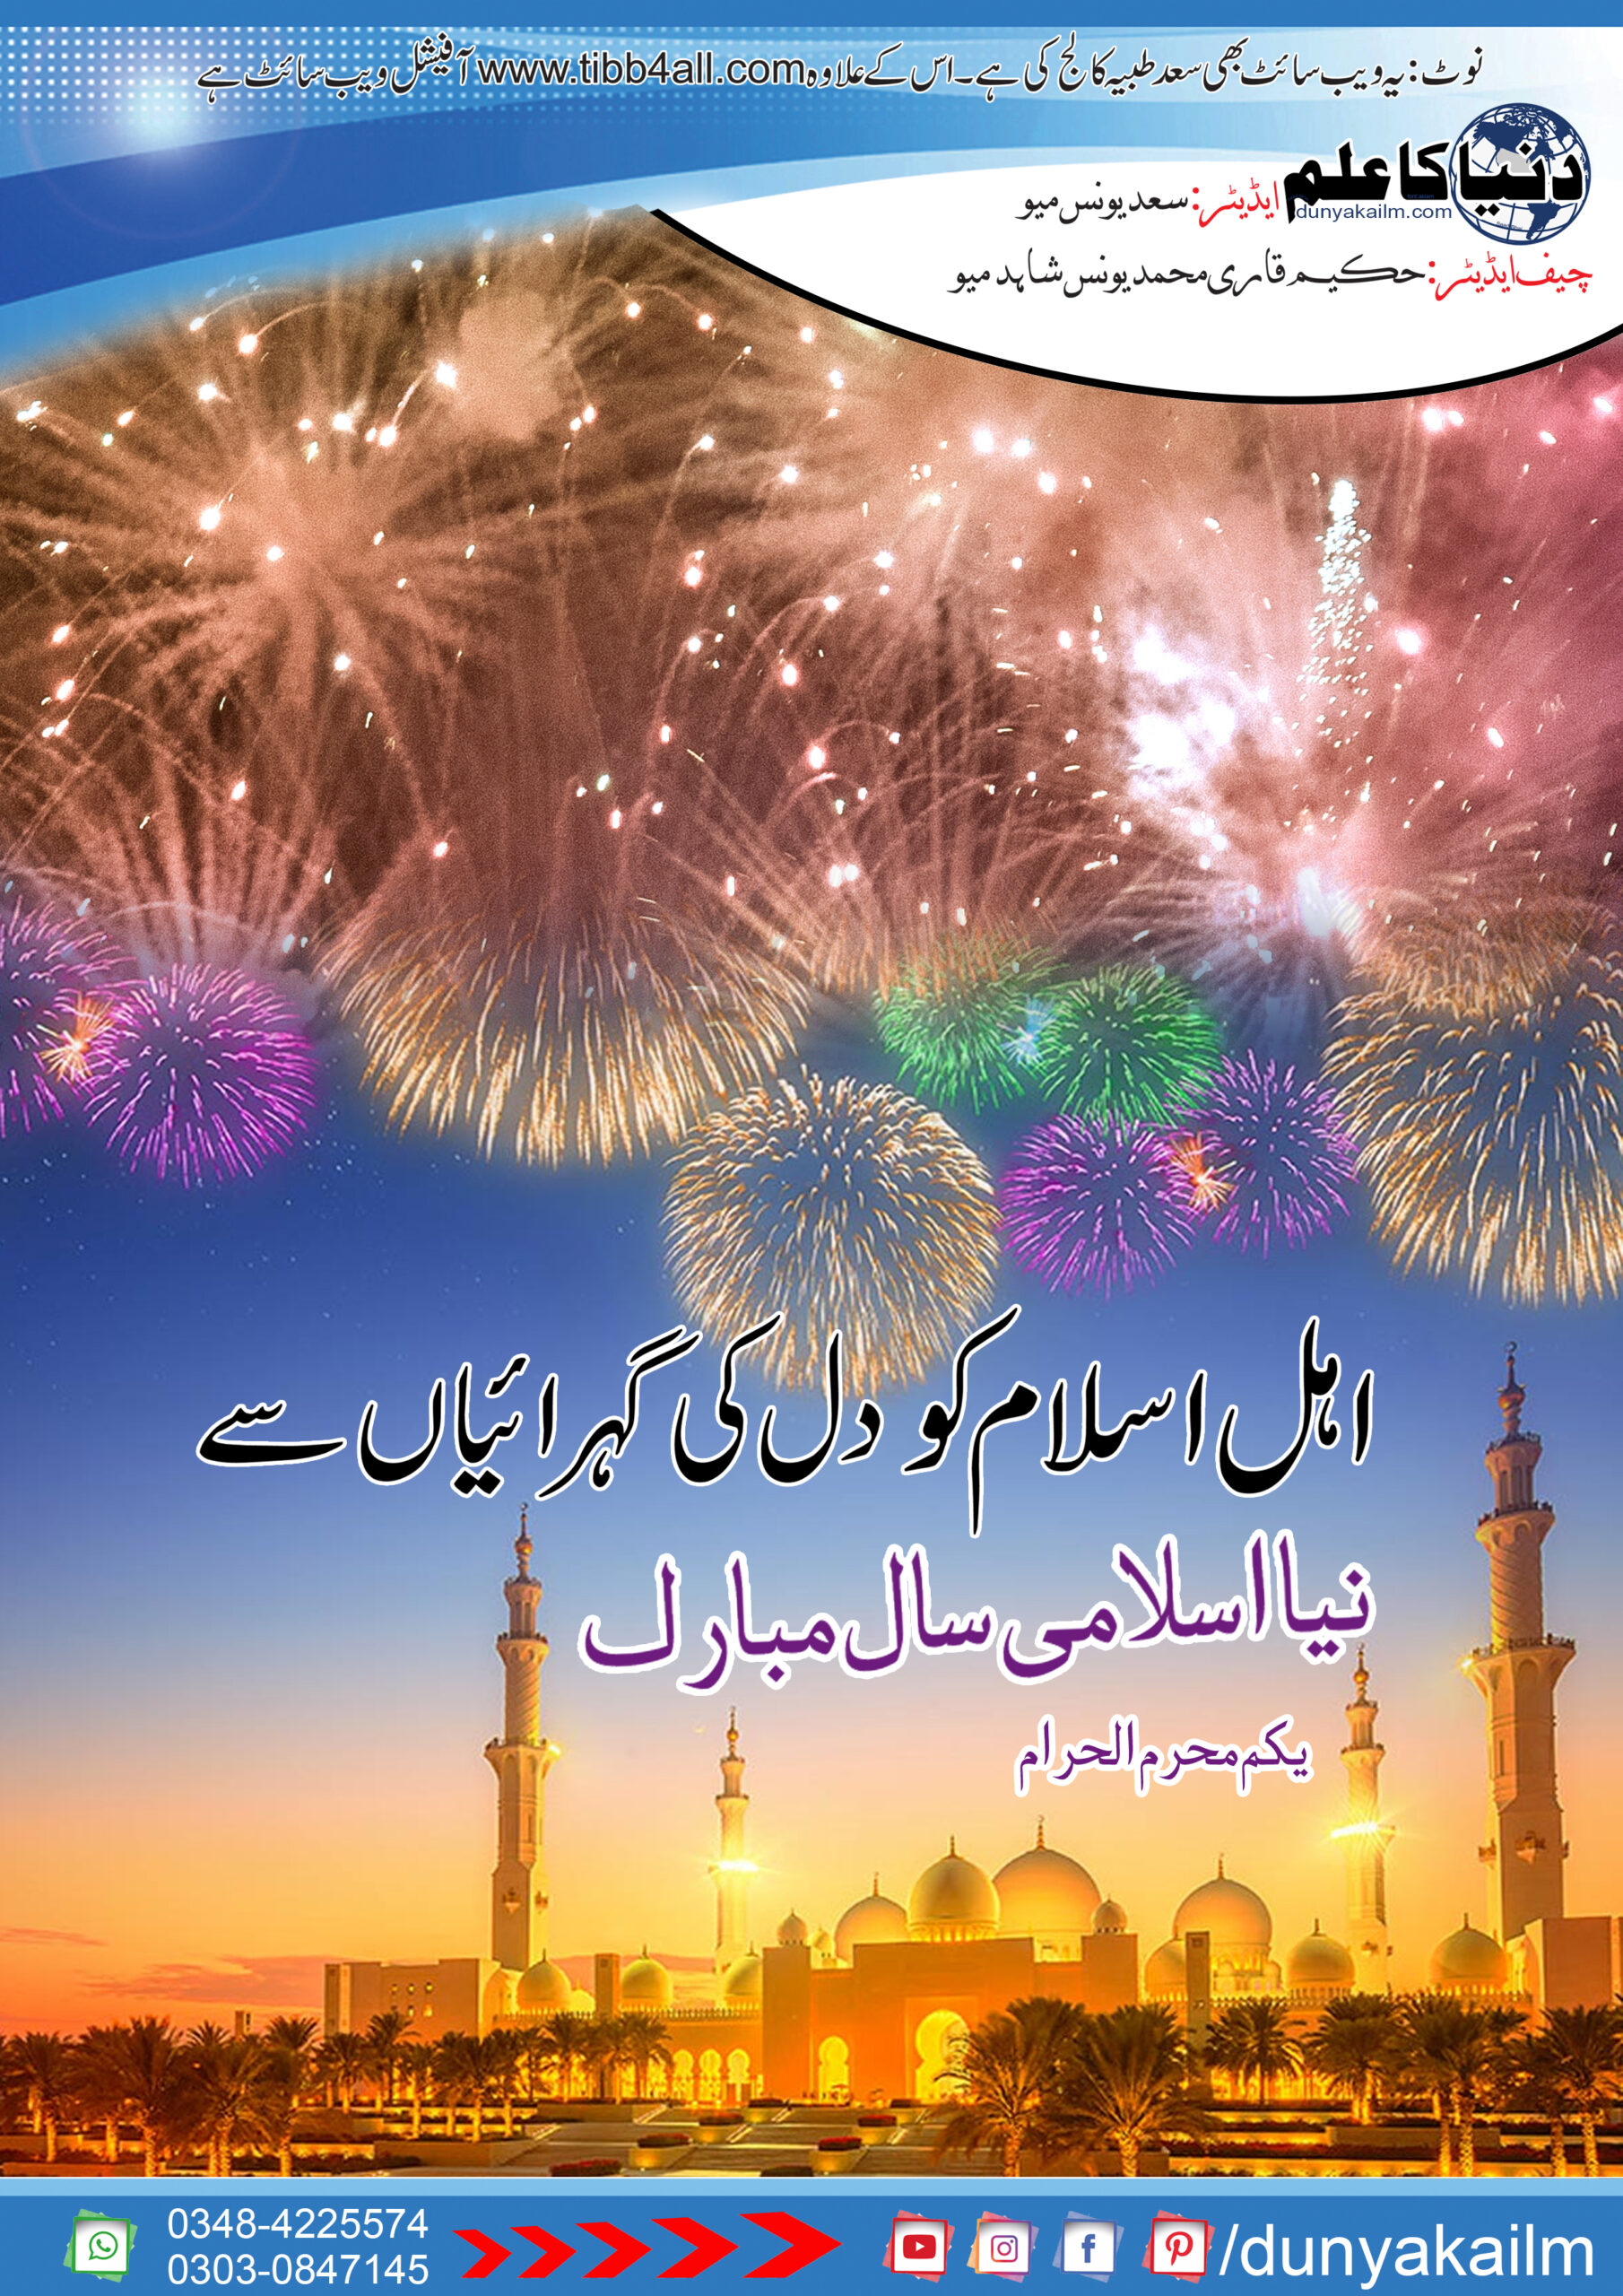 اہل اسلام کو نیا اسلامی سال مبارک ہو